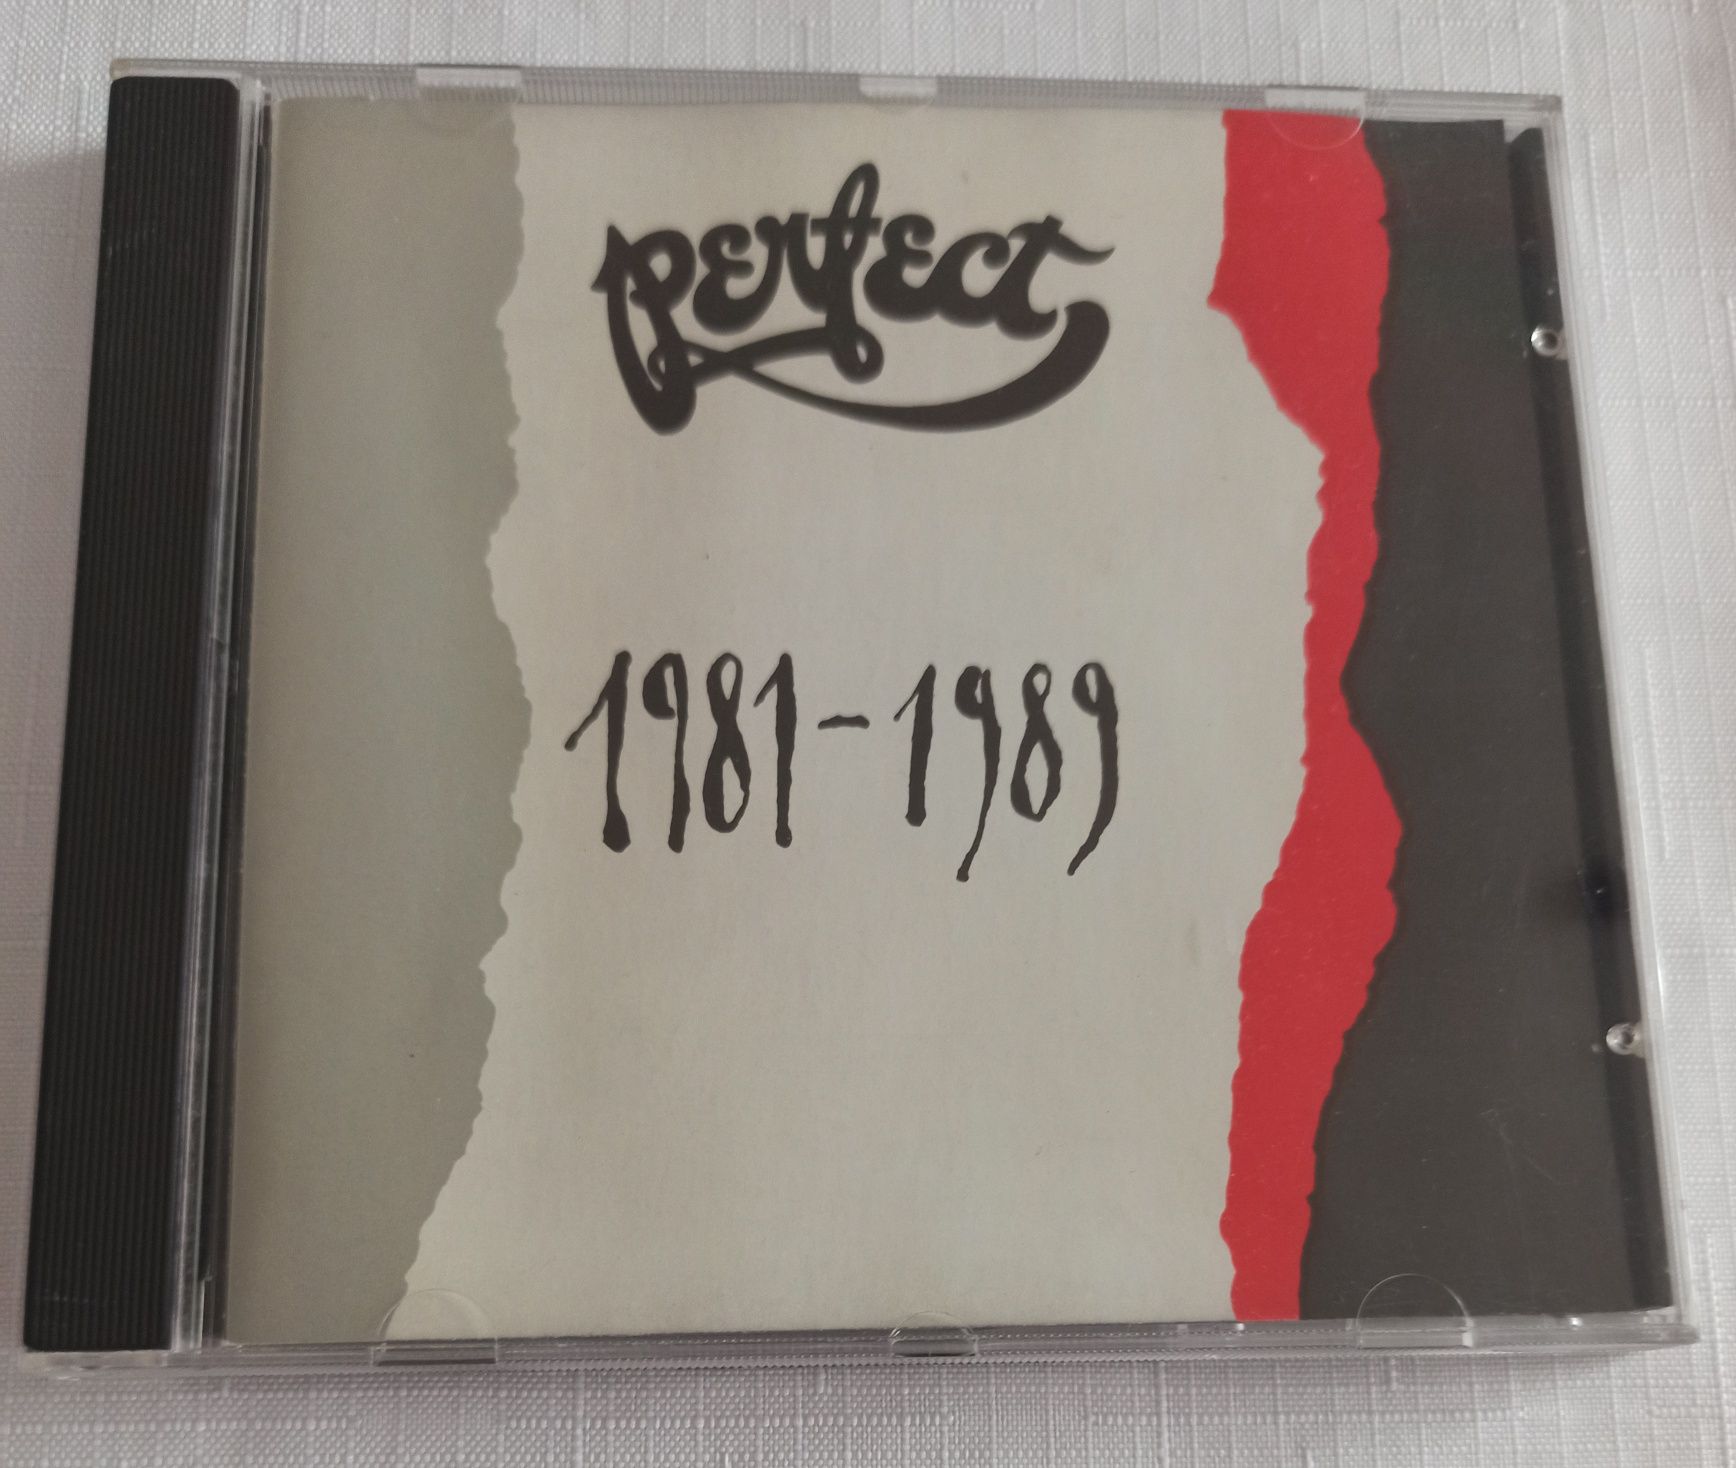 Perfect 1981 - 1989 vol. 1 CD 1991